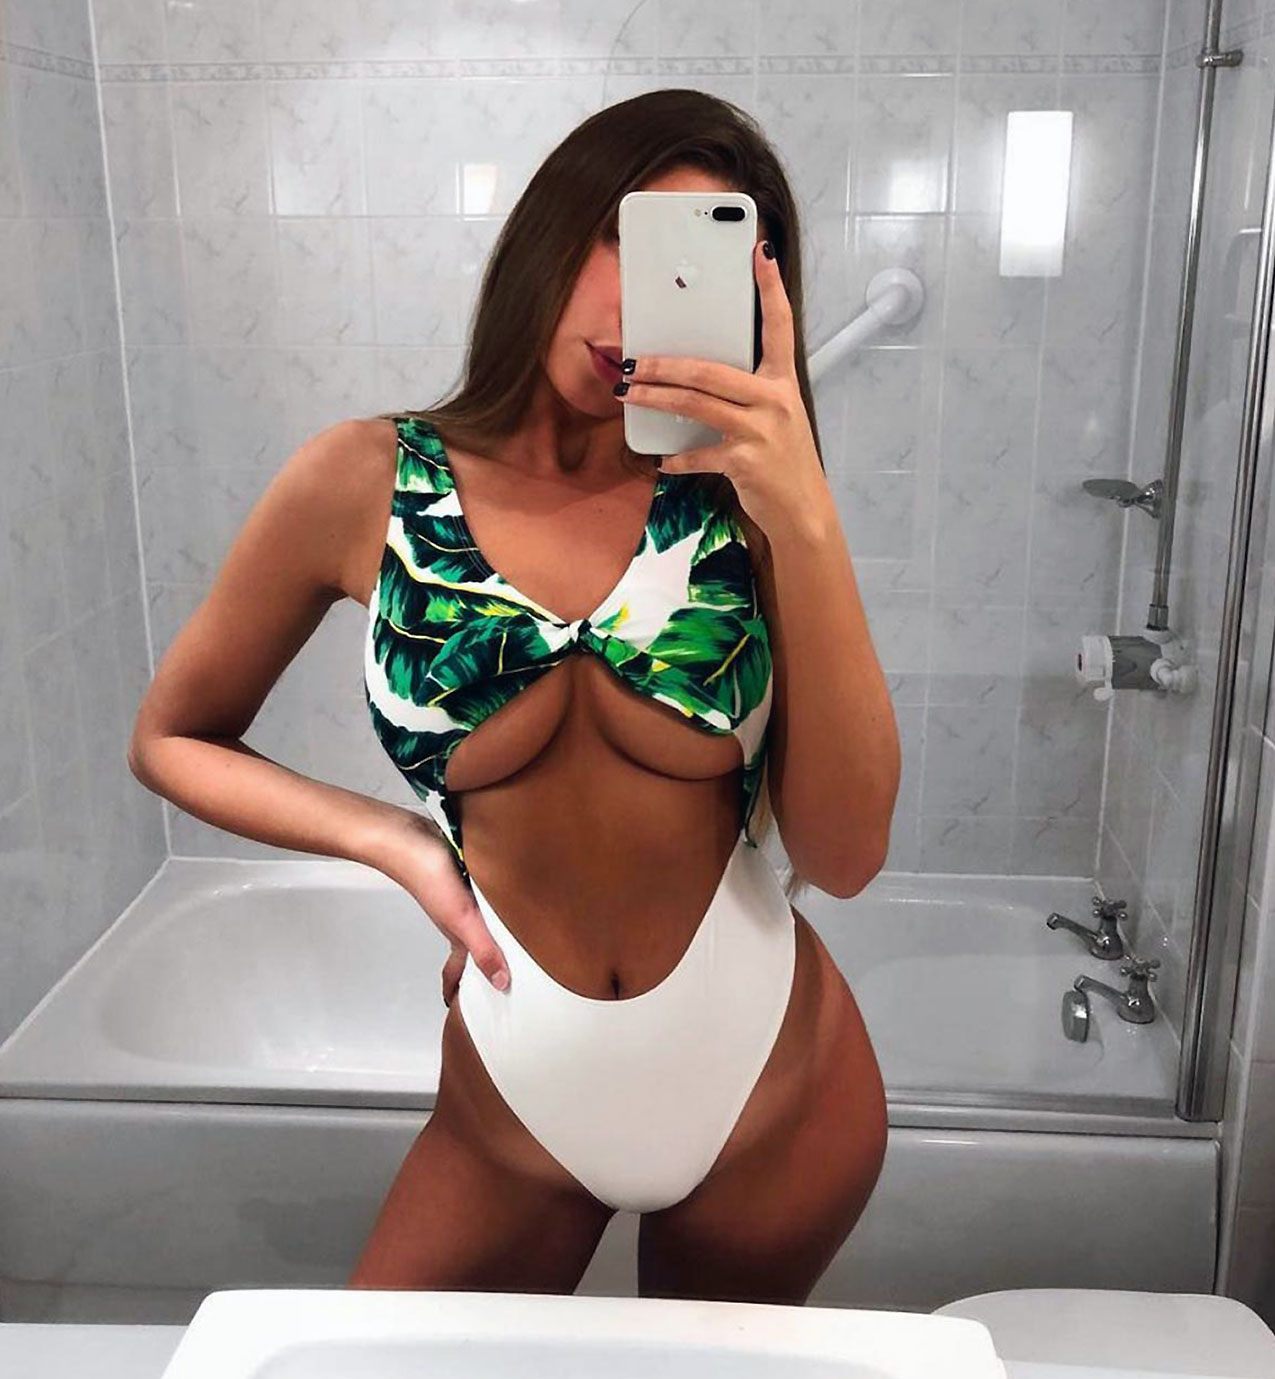 Zara McDermott nude hot sexy porn LeakedDiaries 17